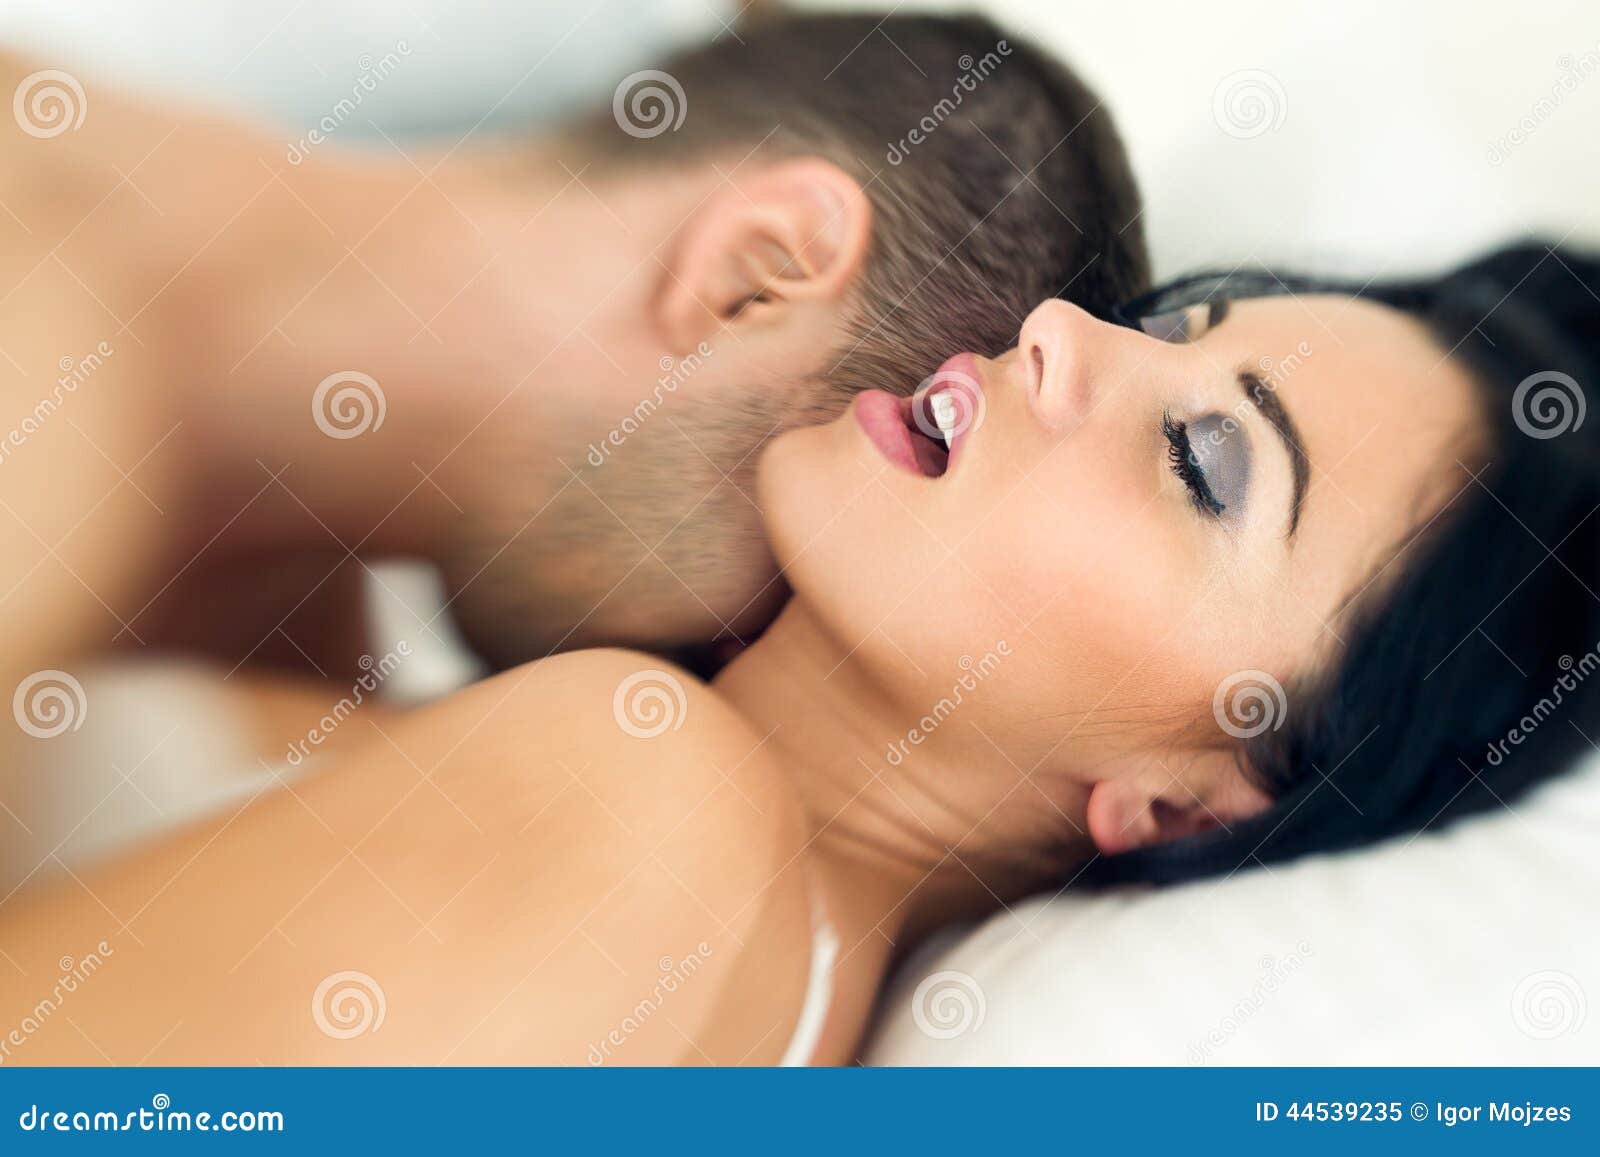 brent hoggan recommends Pics Of Sexual Intercourse